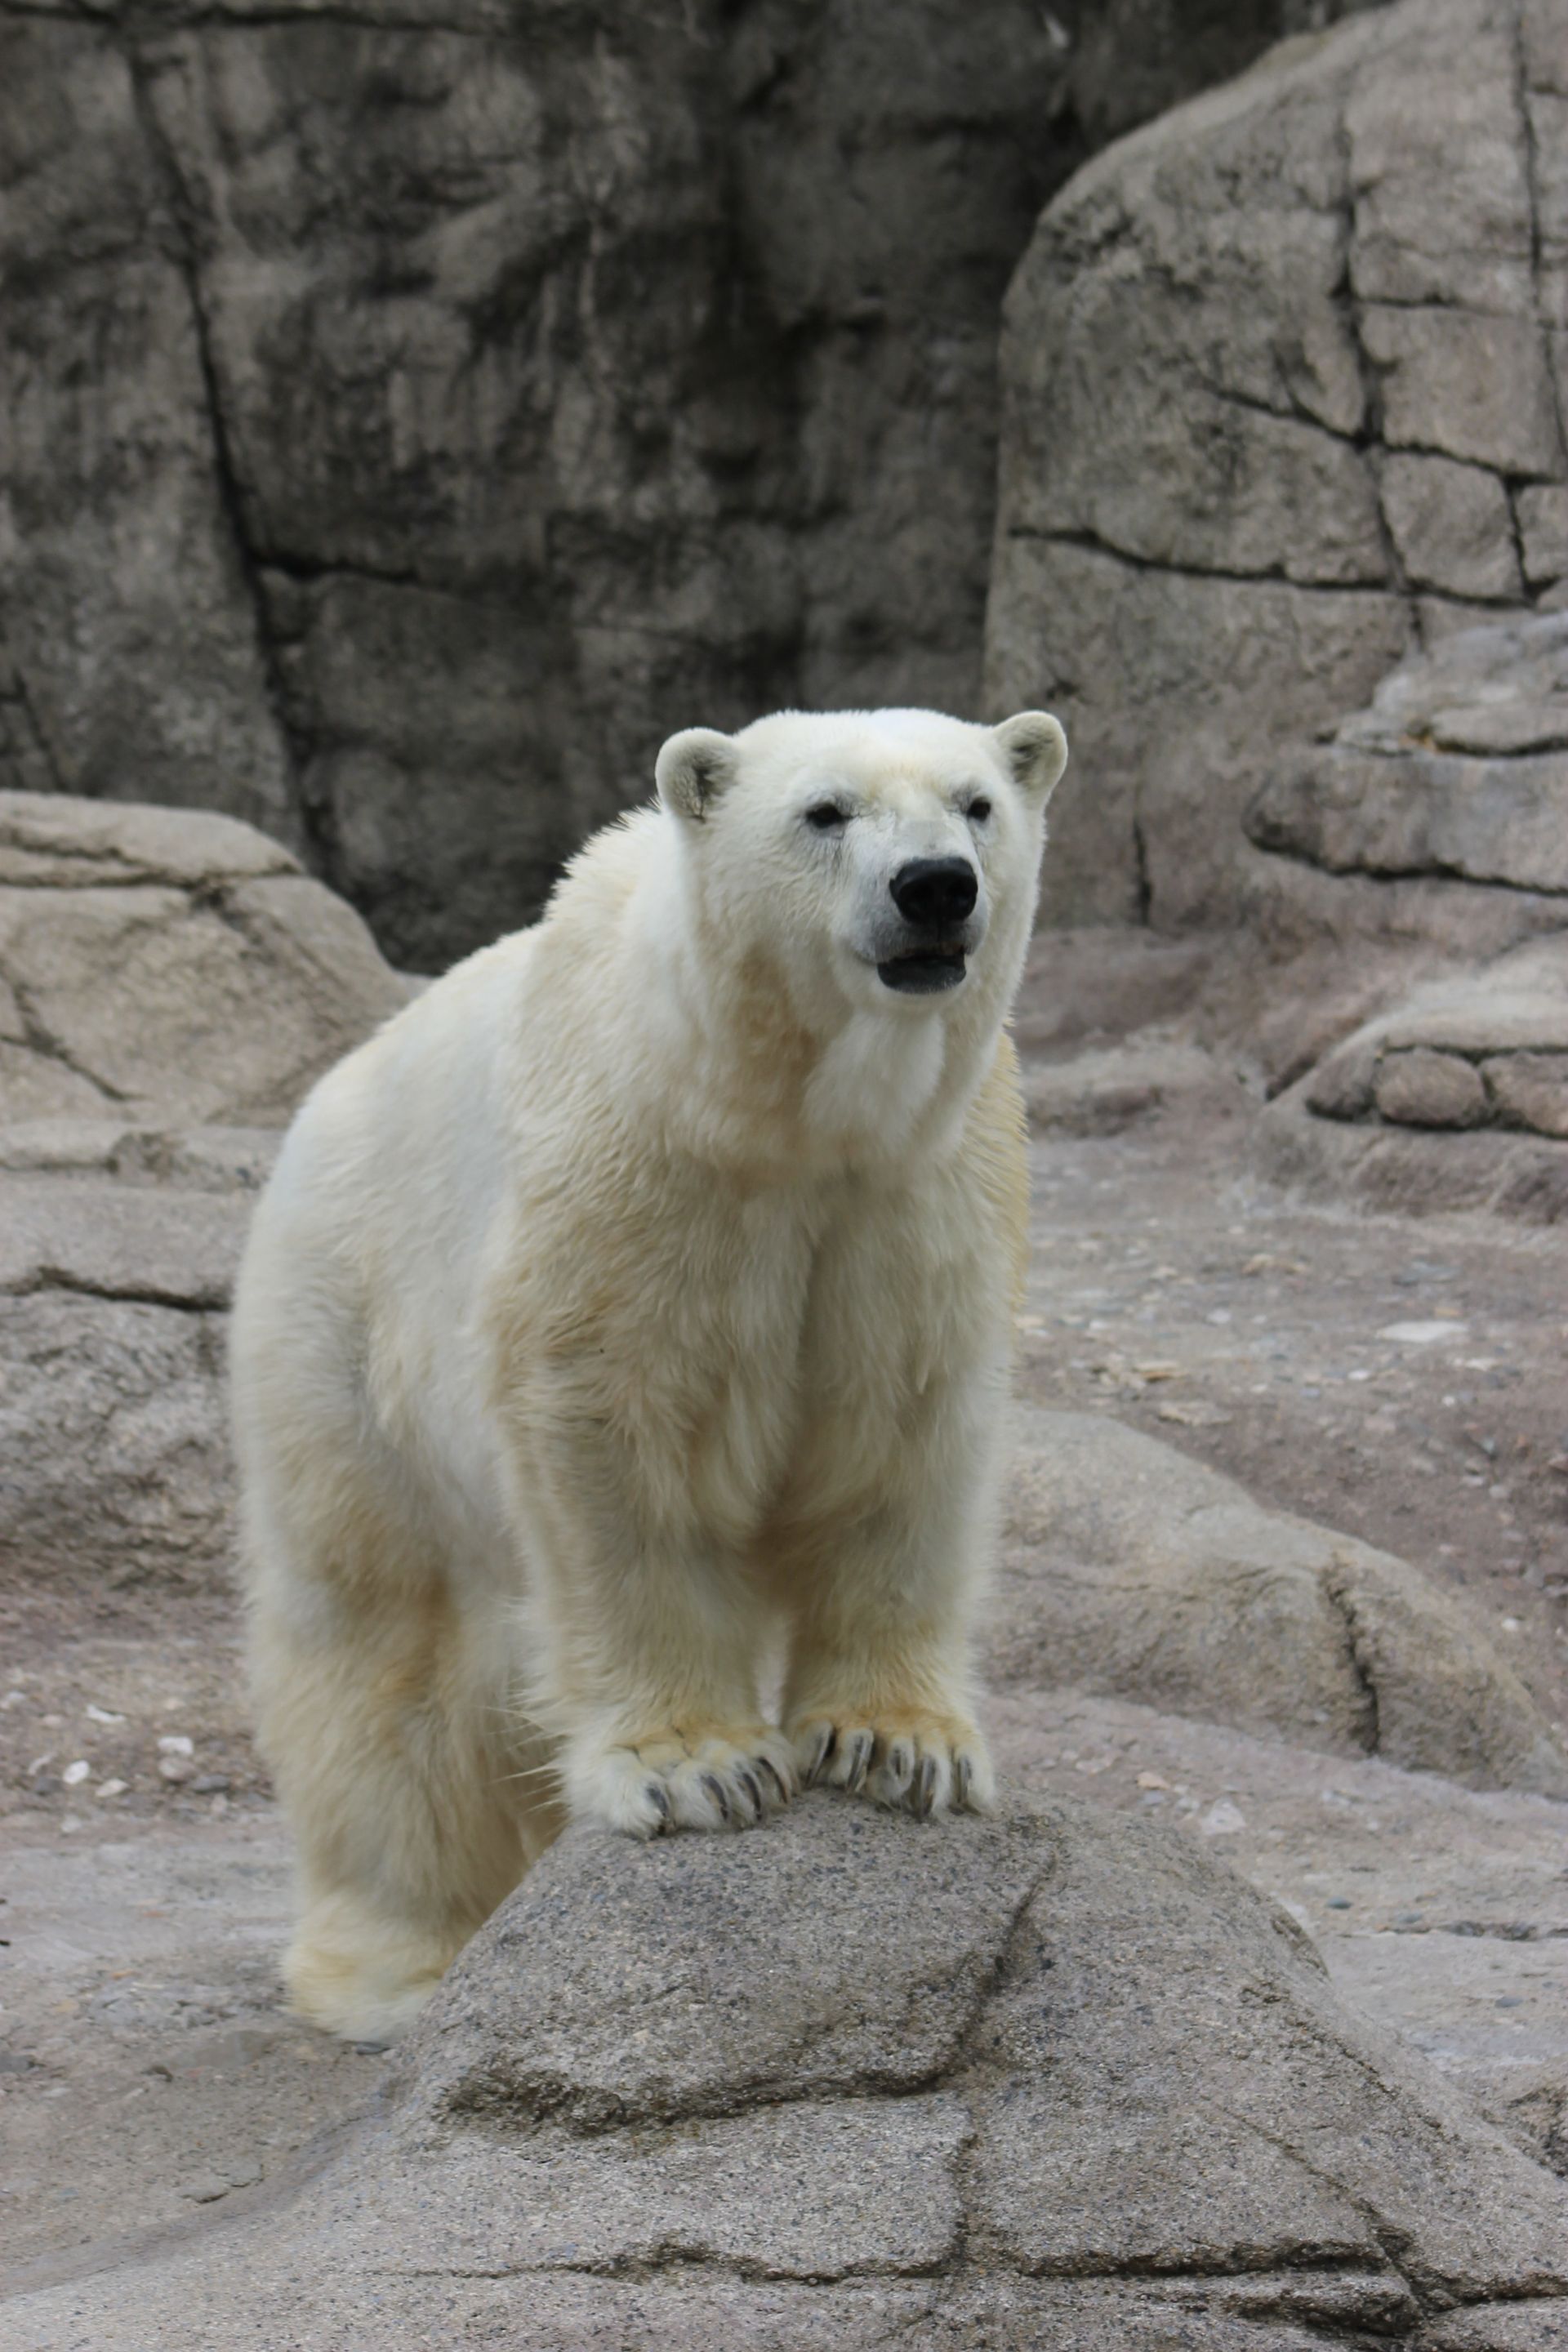 A portrait of a polar bear.